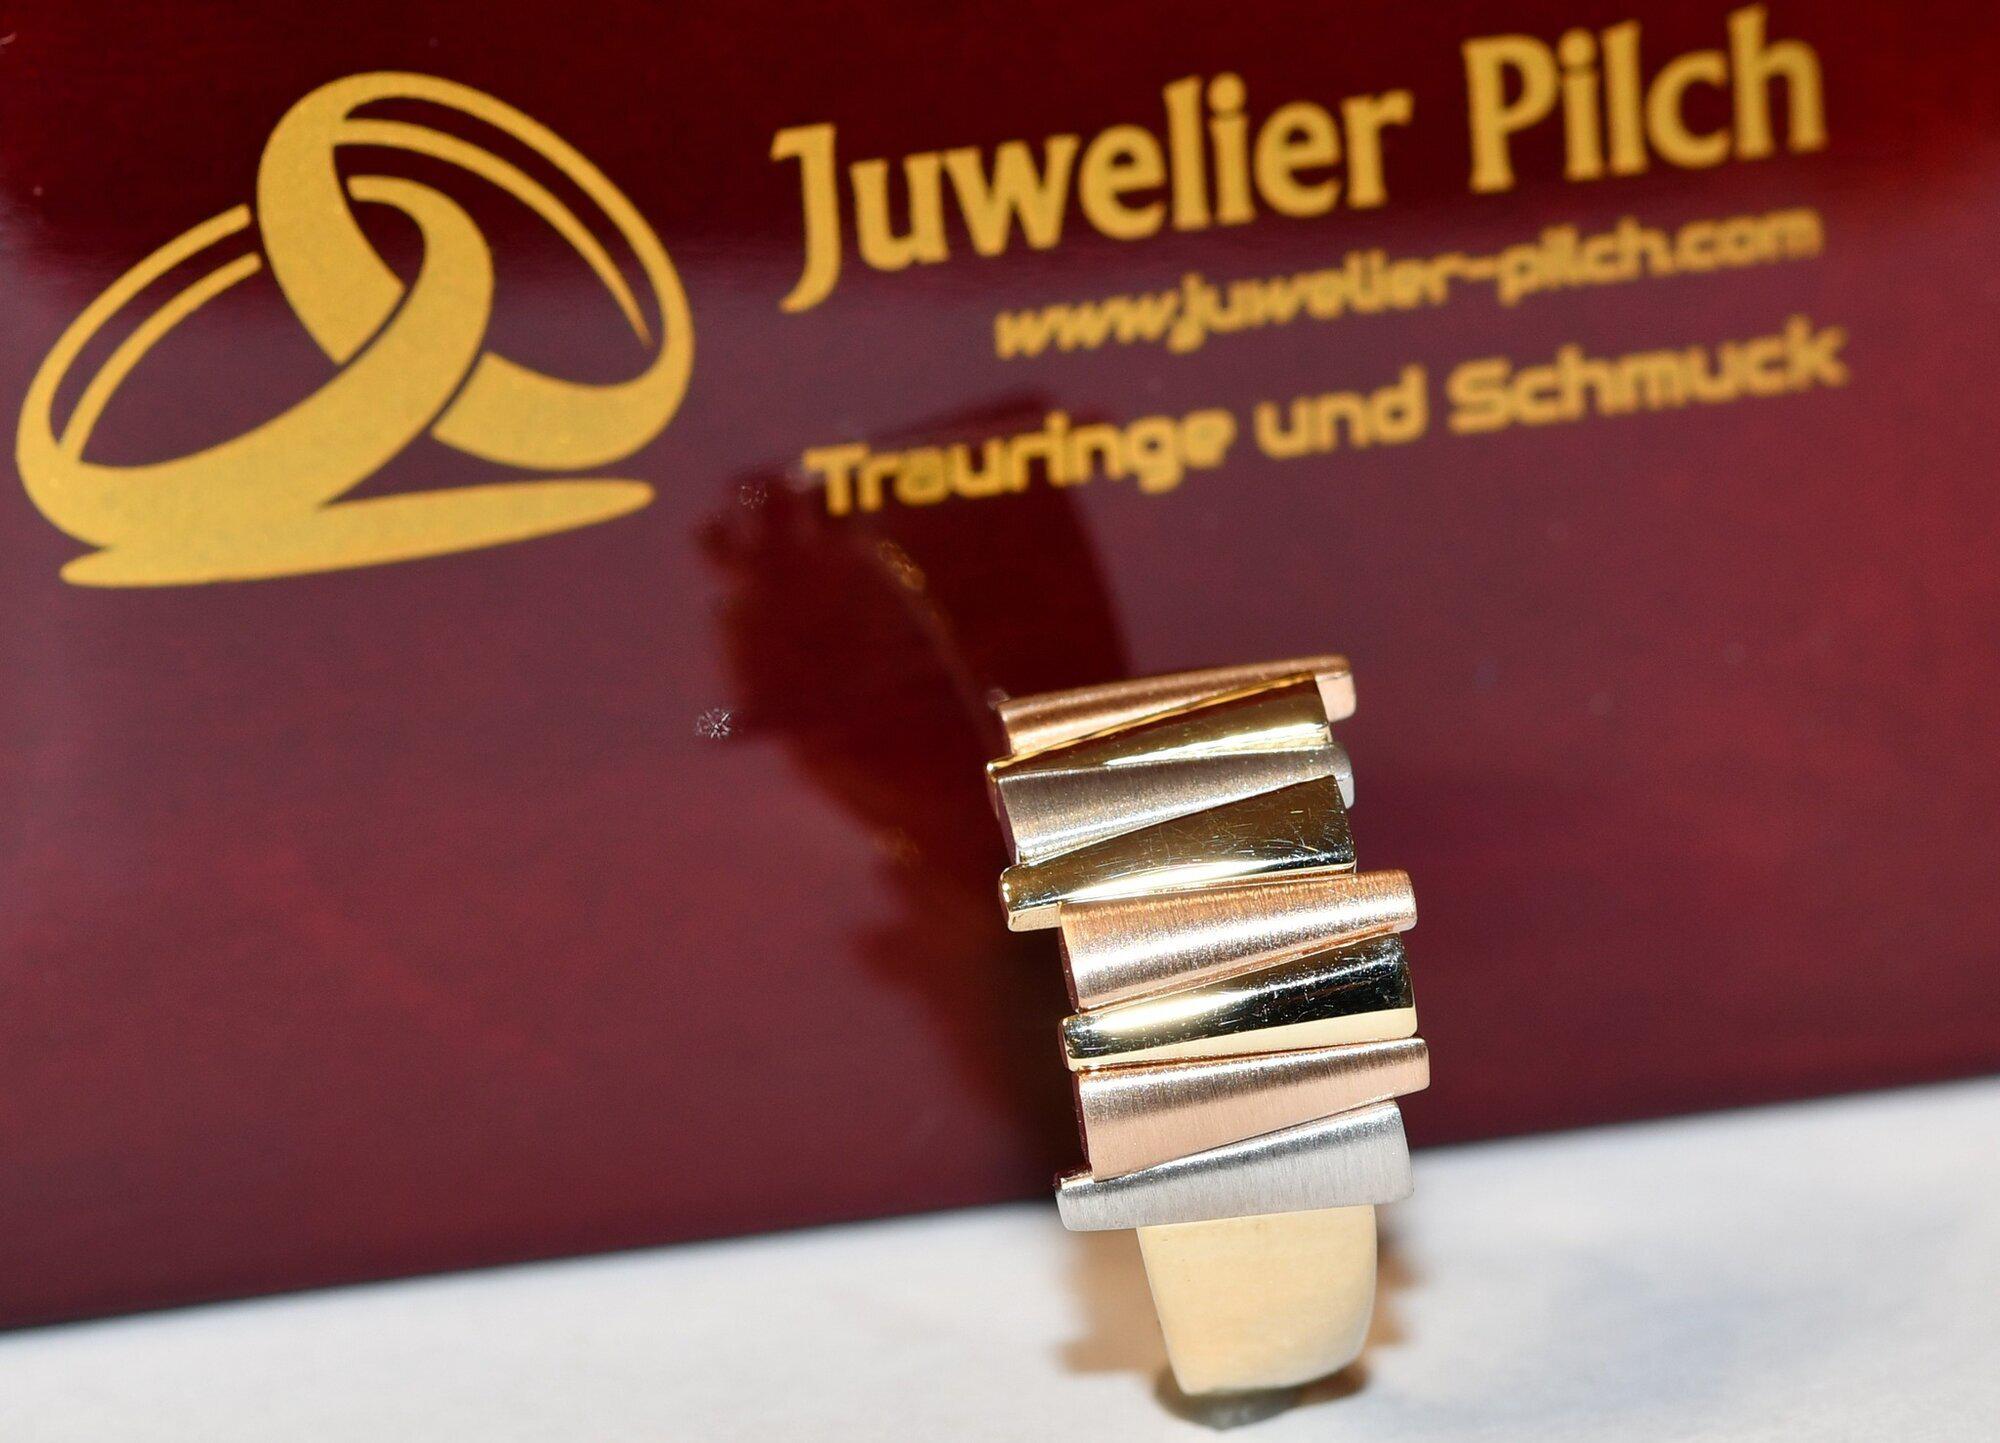 Kundenbild groß 9 Trauringstudio Erding - Trauringe Verlobungsringe Schmuck by Juwelier Pilch